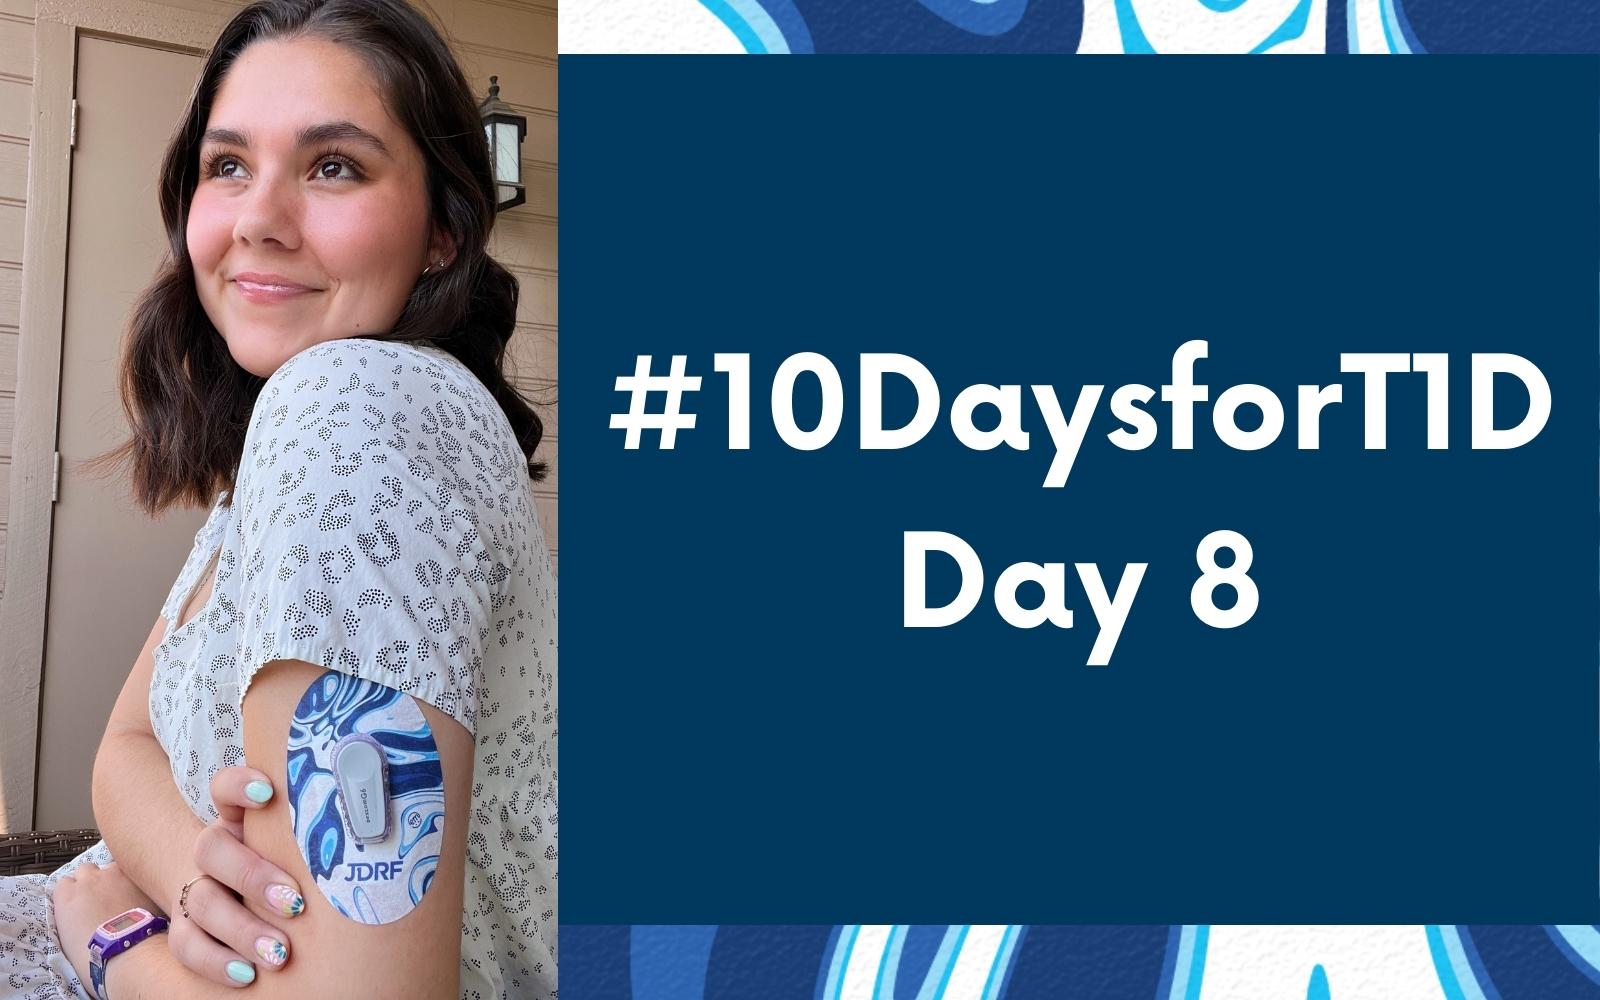 #10DaysforT1D Challenge Day 8